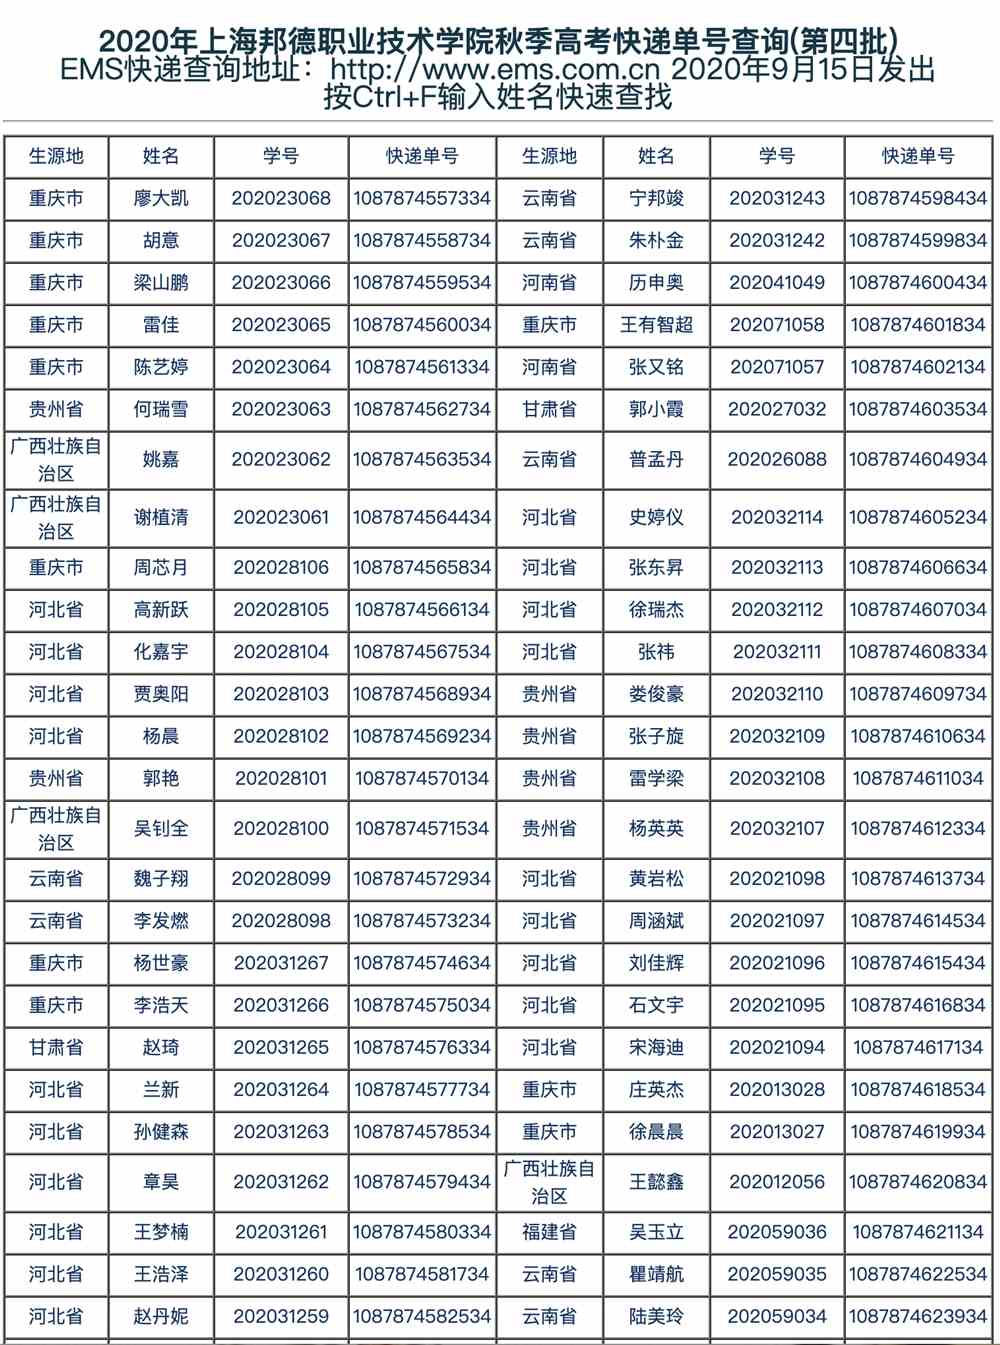 上海邦德职业技术学院2020年上海邦德职业技术学院秋季高考快递单号查询(第四批)